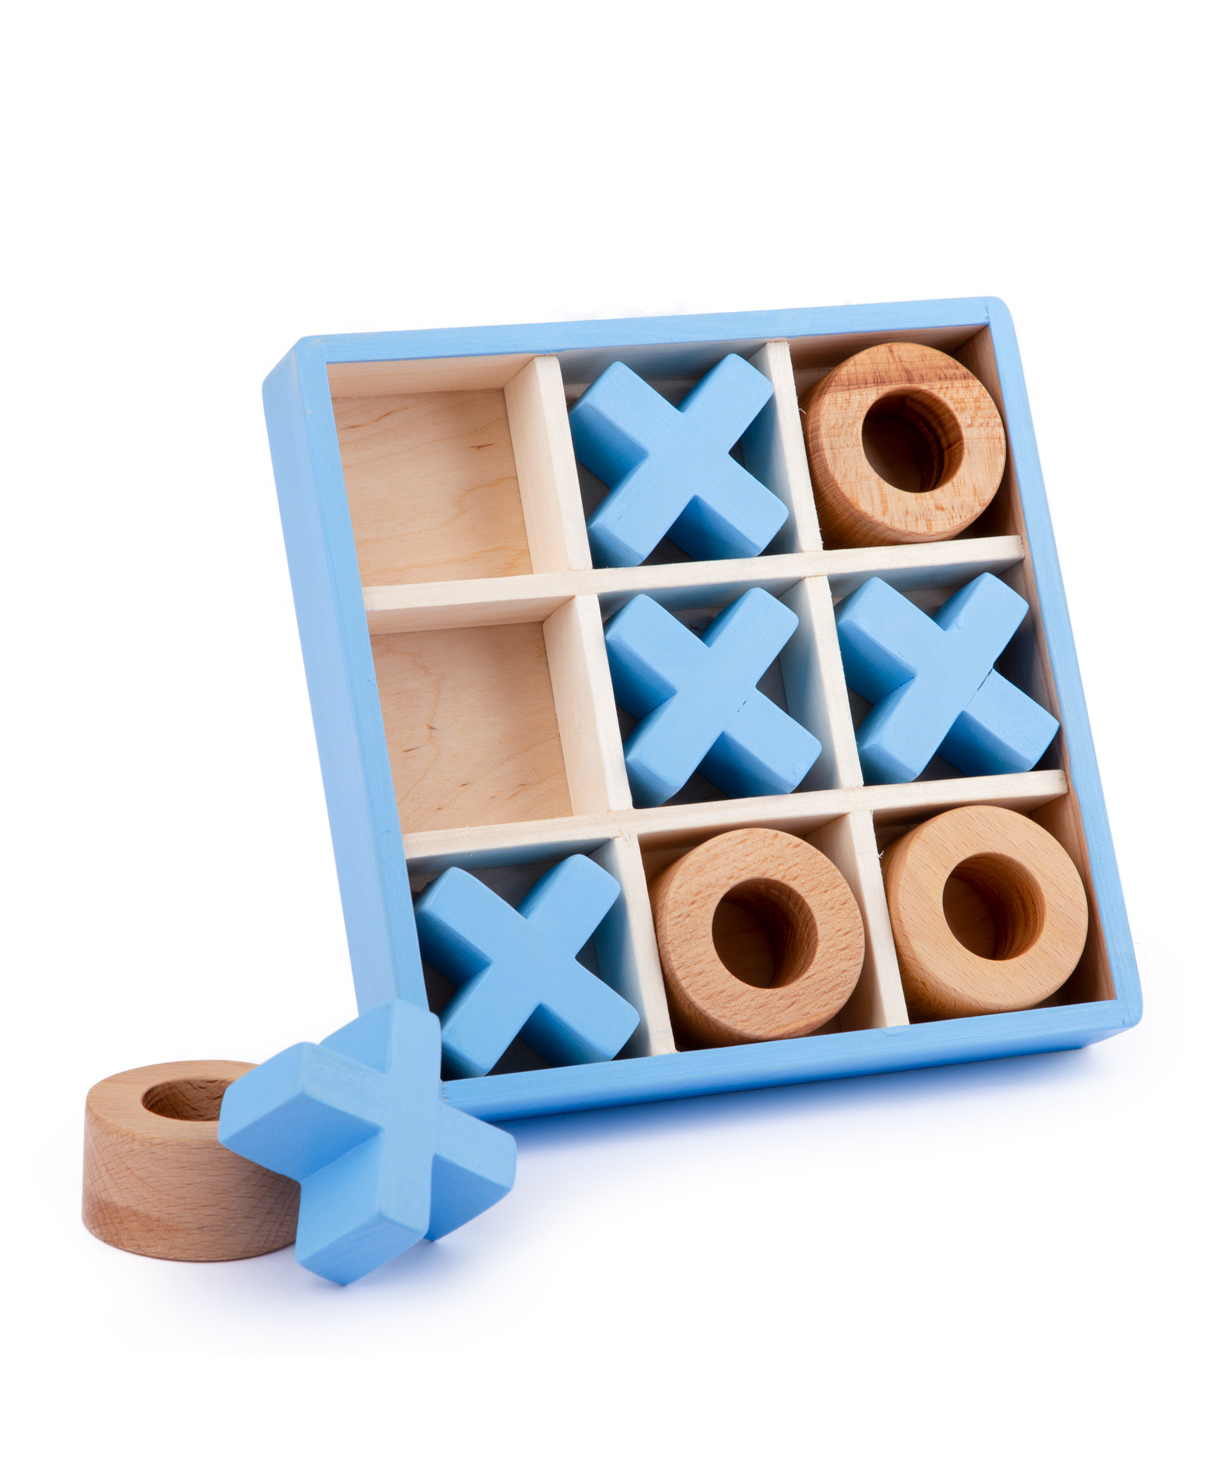 Խաղալիք «Im wooden toys» Tic Tac Toe